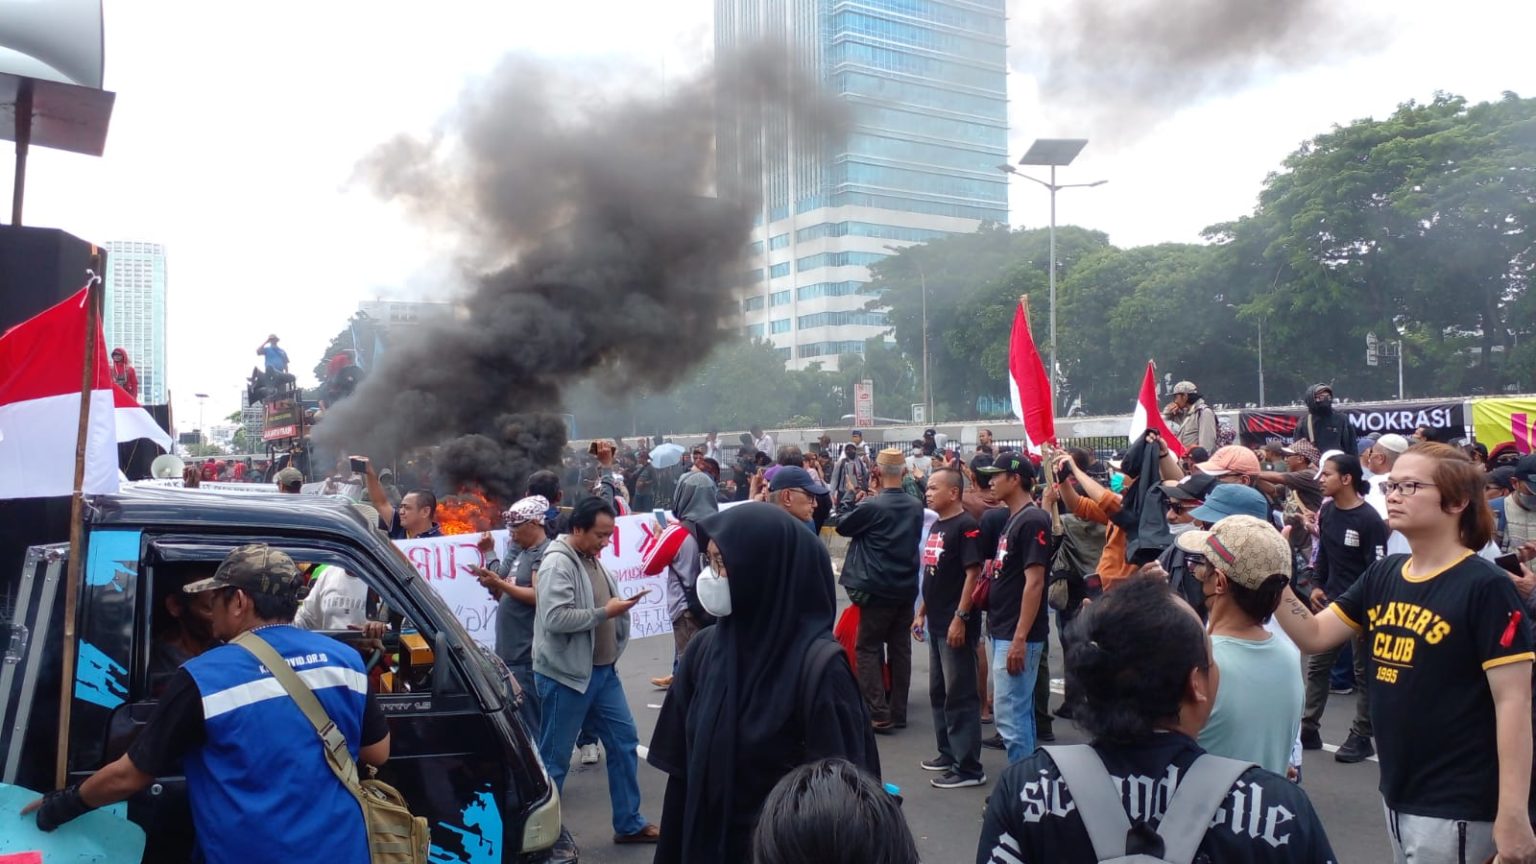 Ribuan personel amankan demo hak angket di depan Gedung DPR (Dok Konteks.co.id)